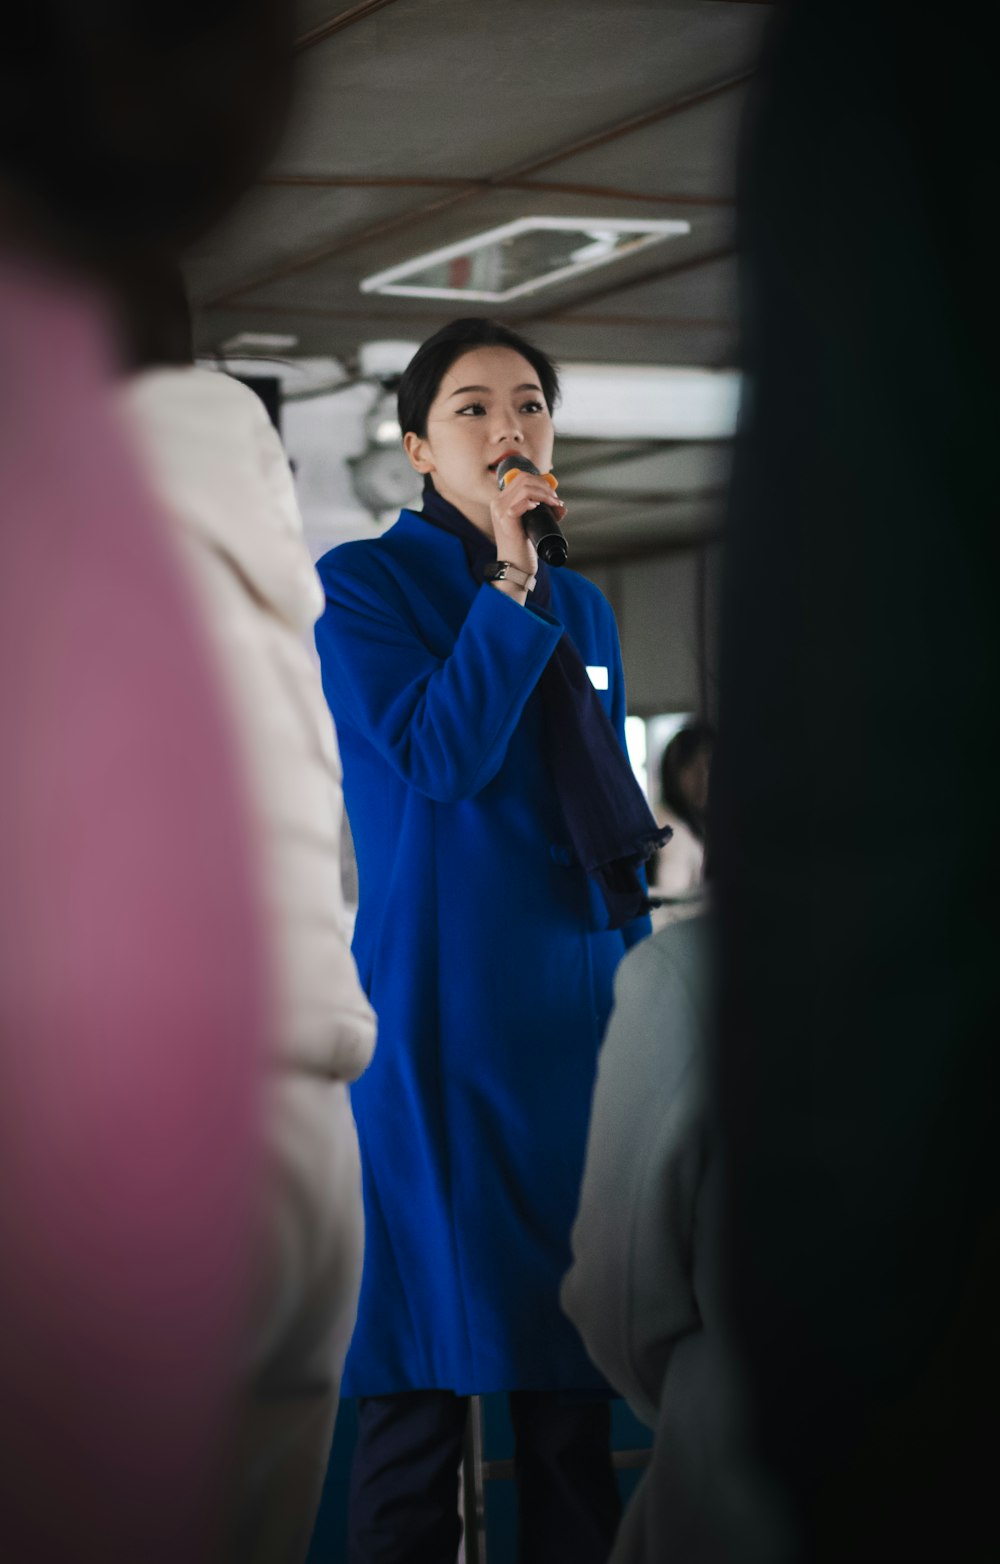 거울 앞에 서 있는 파란 코트를 입은 여자